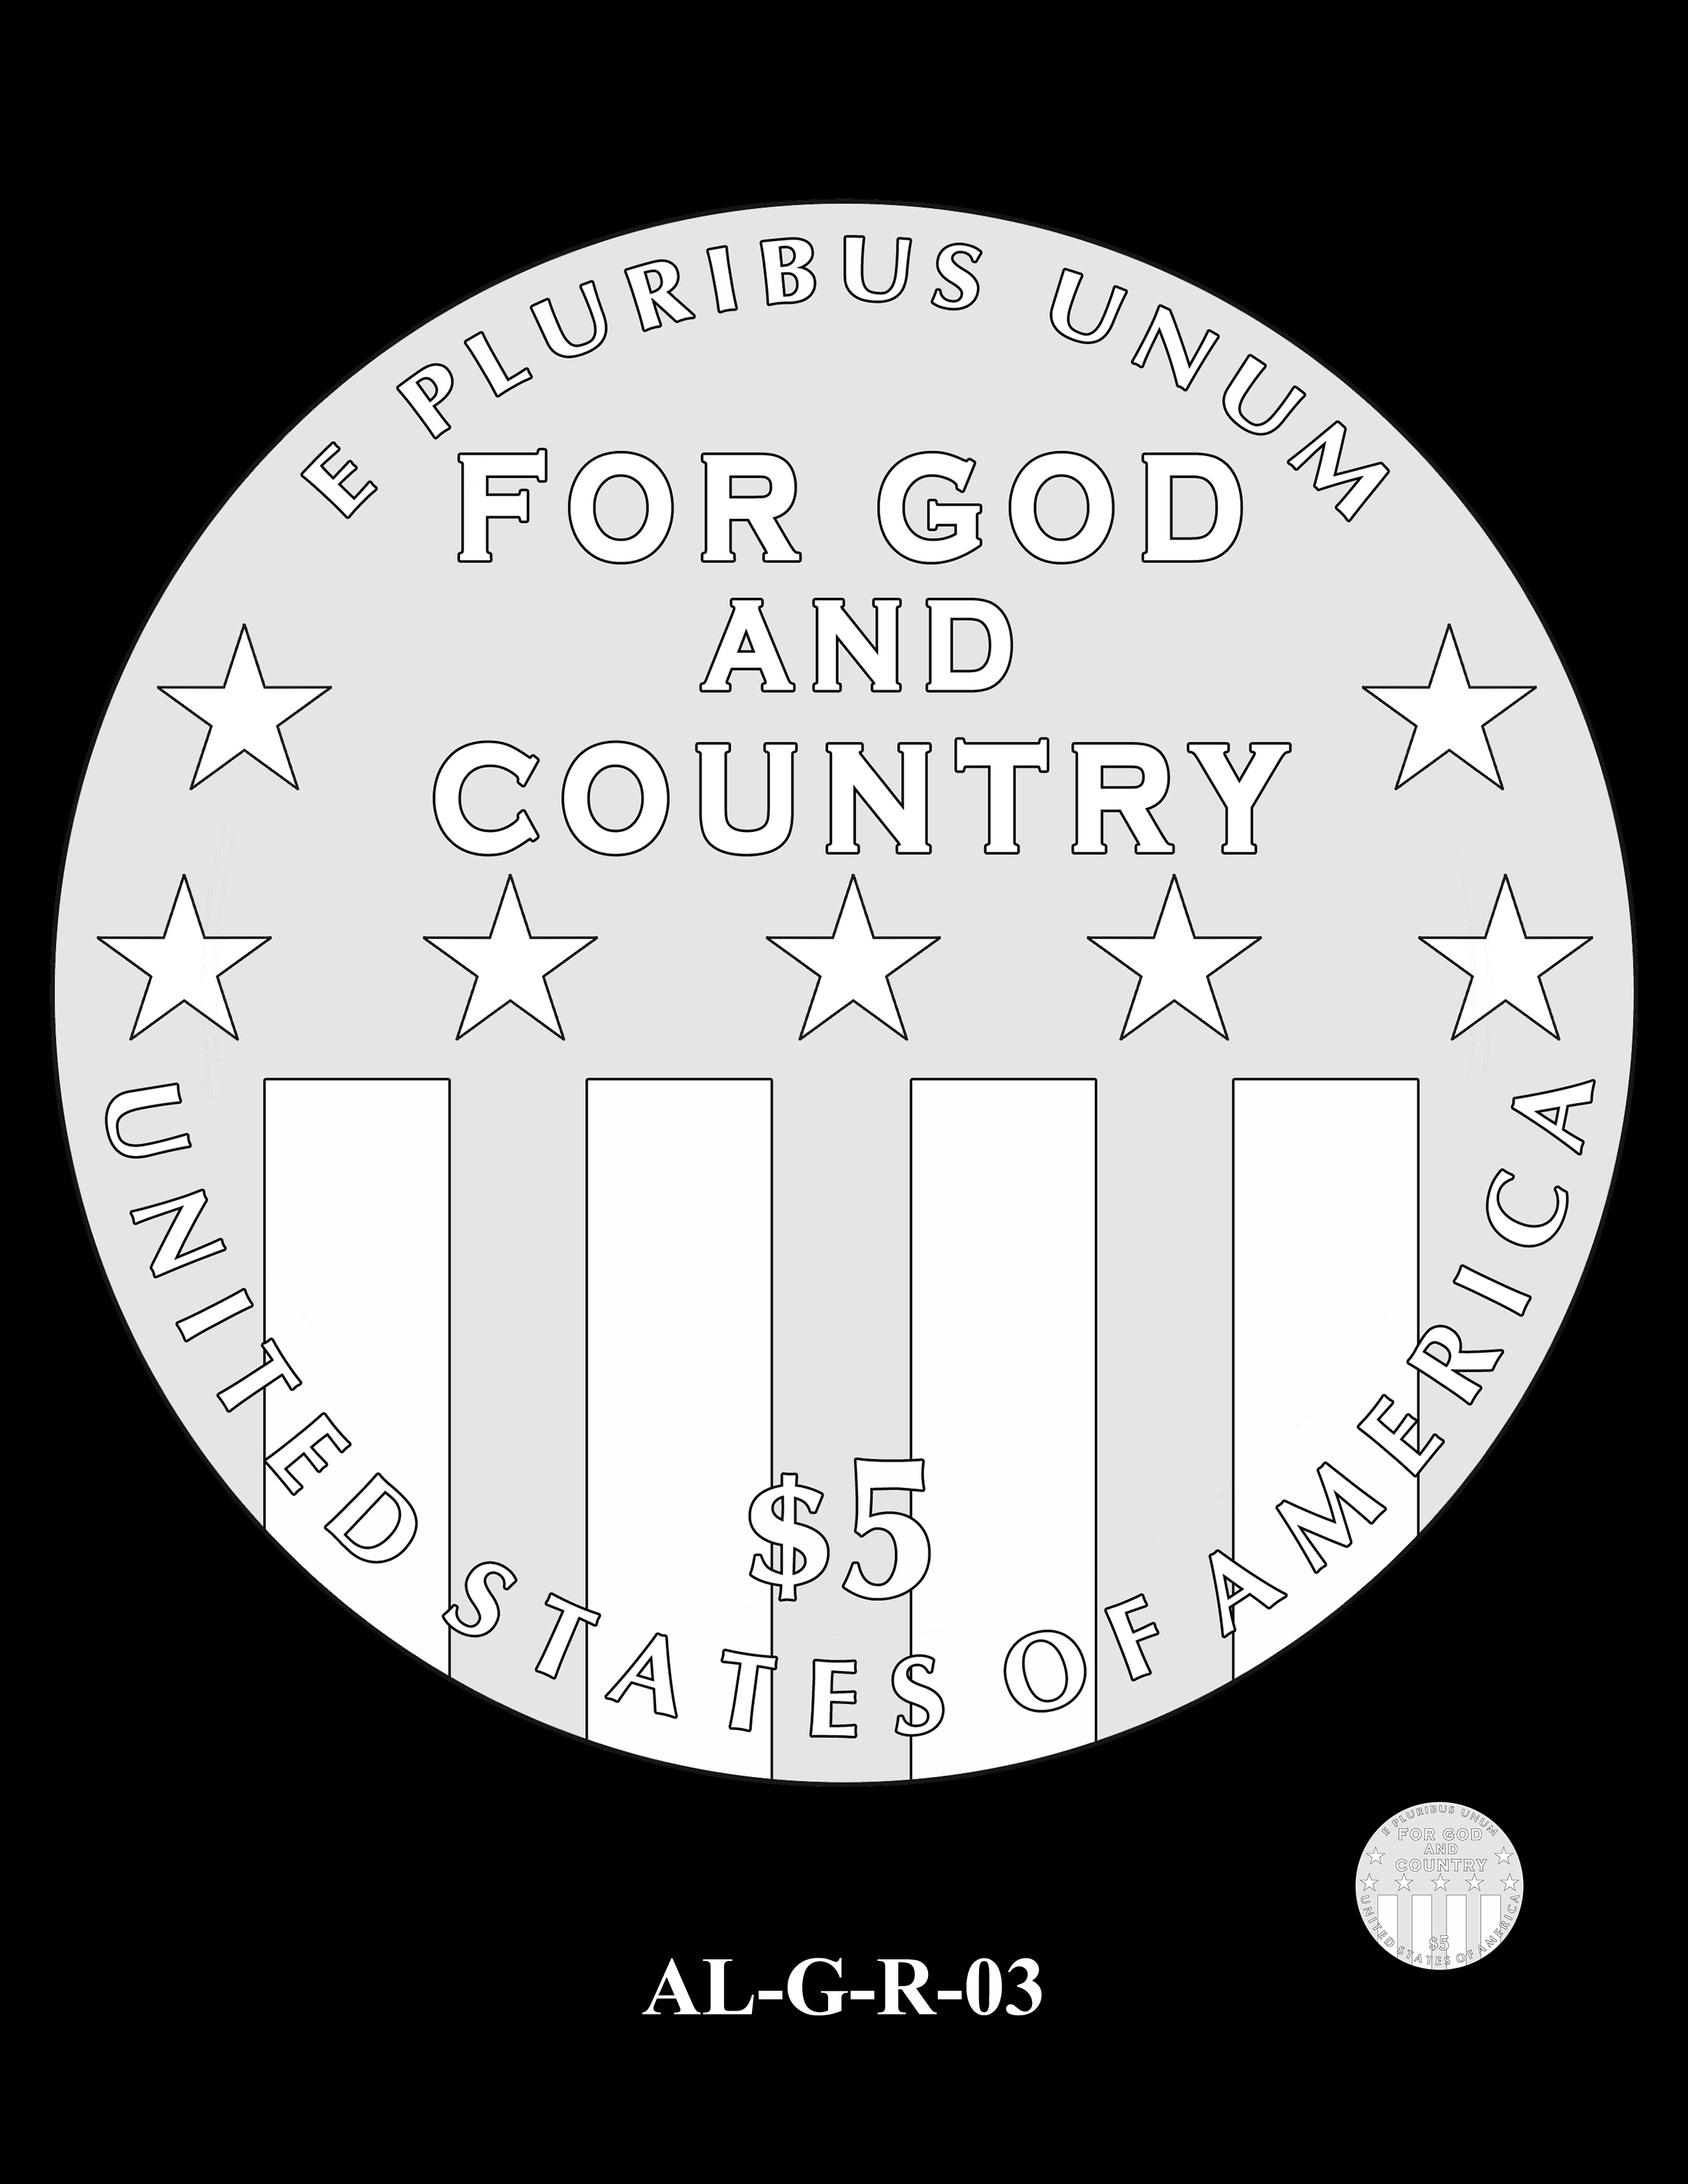 AL-G-R-03 -- 2019 American Legion 100th Anniversary Commemorative Coin Program - Gold Reverse